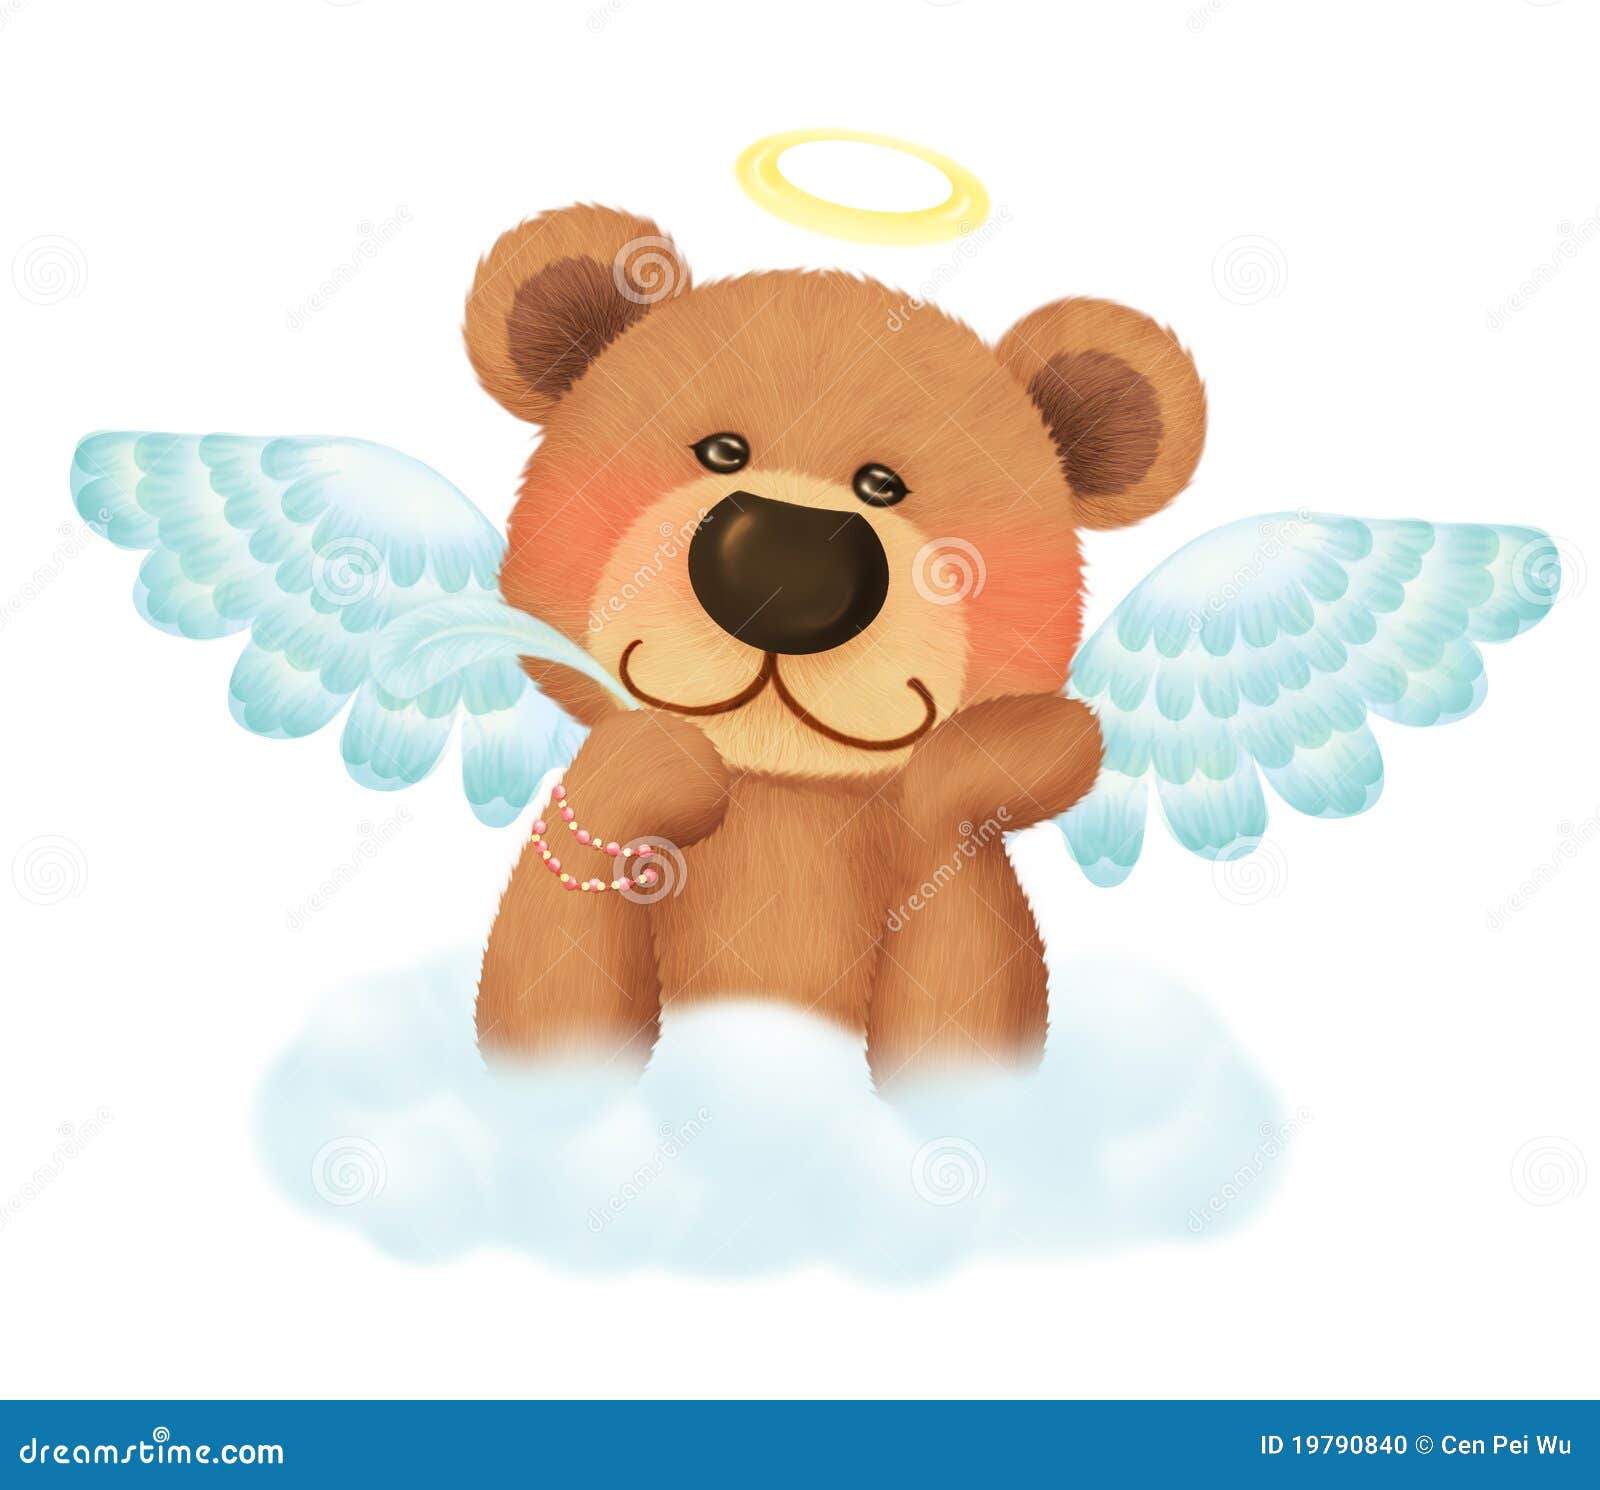 teddy bear angel clipart - photo #27